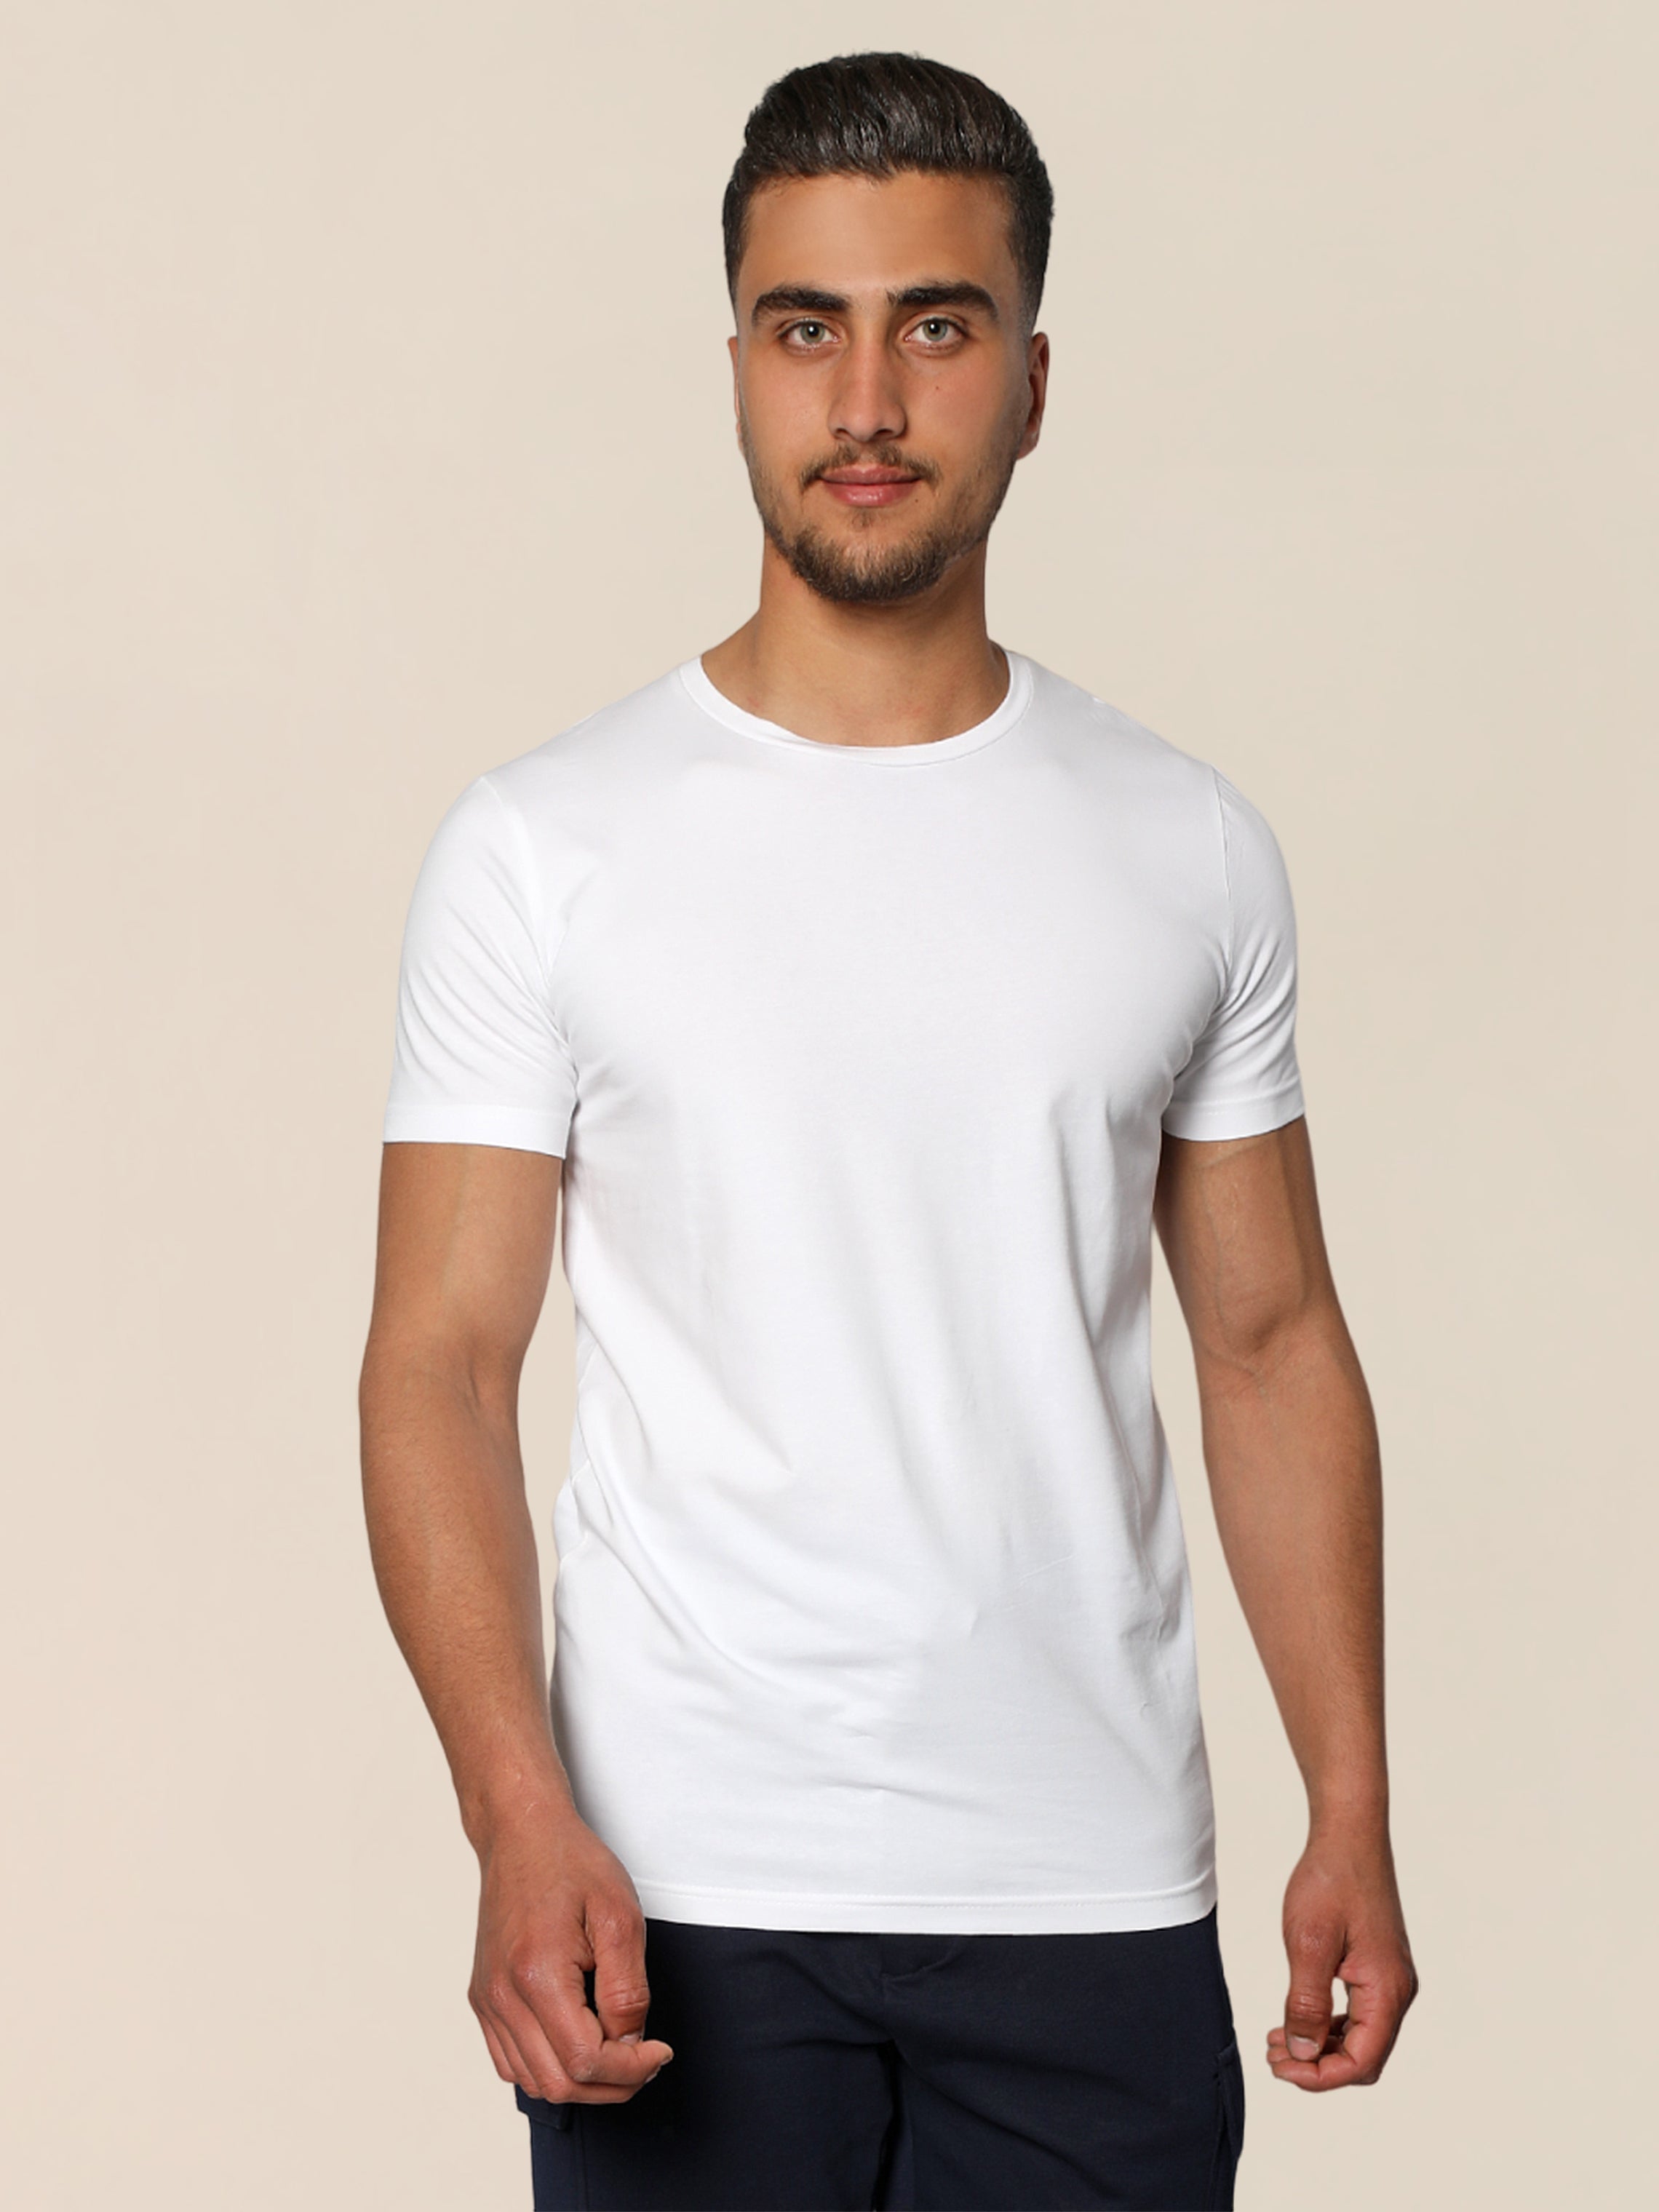 Jack Dapper Shortsleeved Basic T-shirt With Round Neck